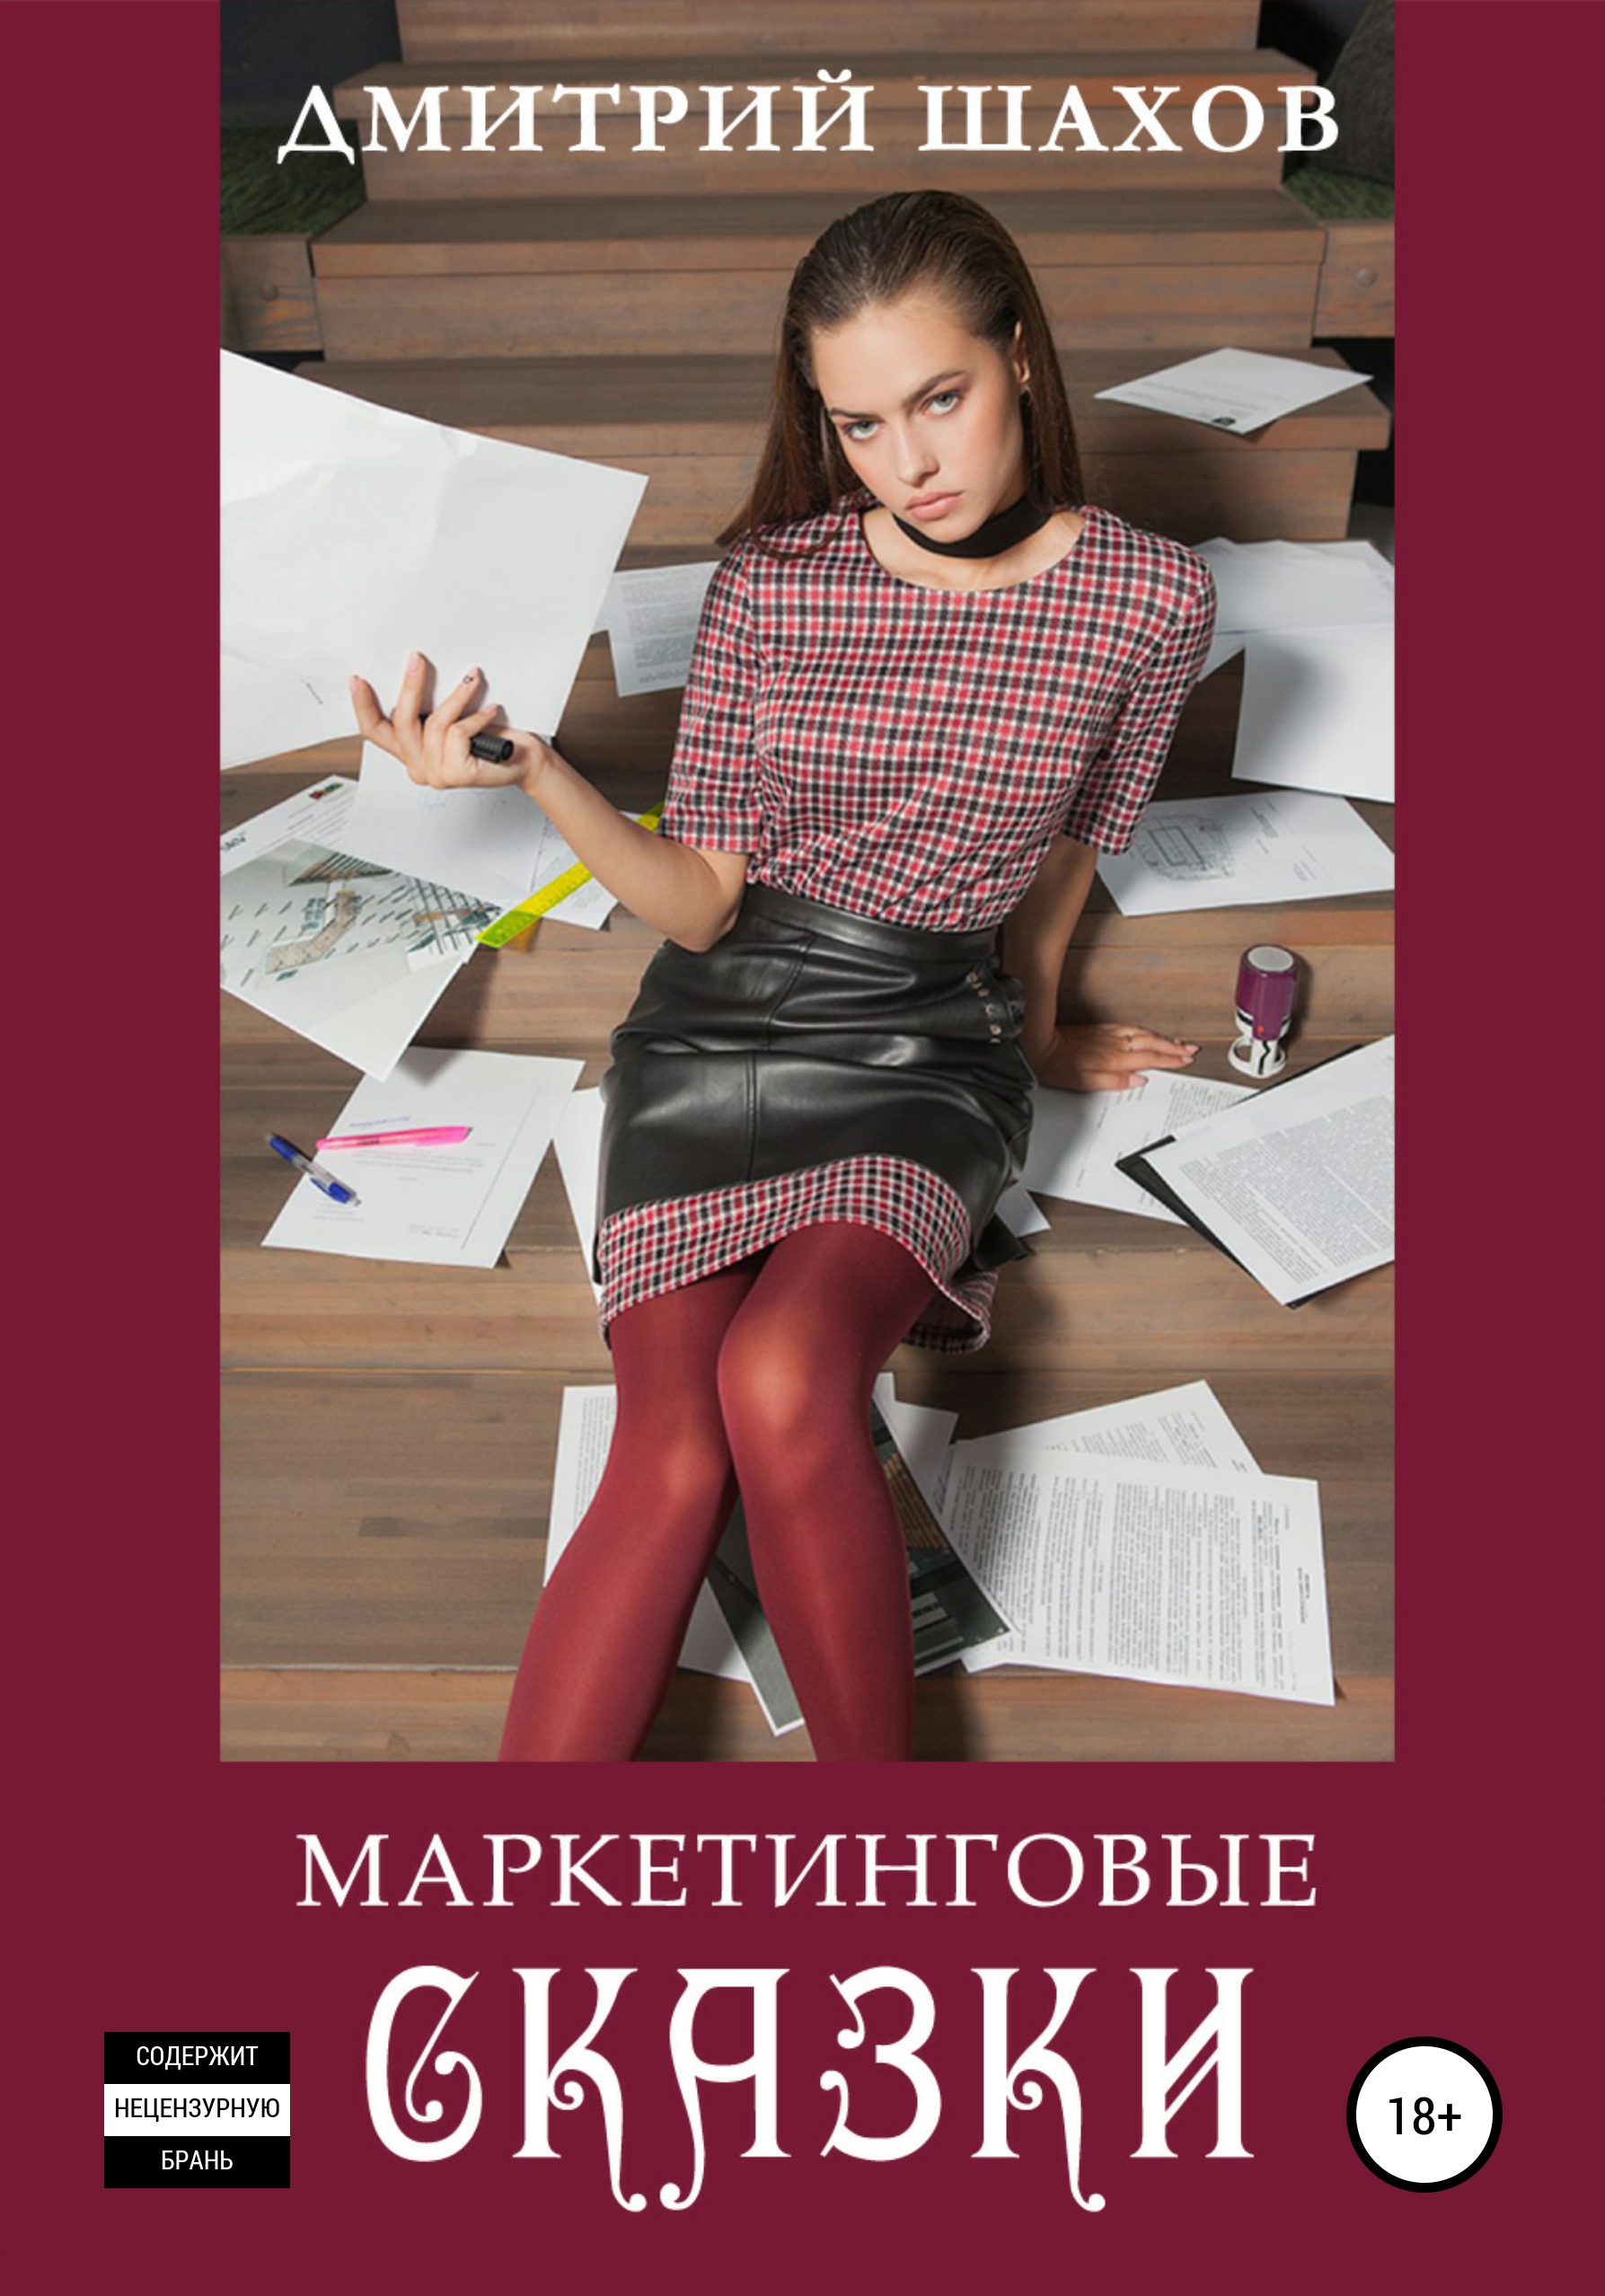 Книга  Маркетинговые сказки созданная Дмитрий Шахов может относится к жанру маркетинг для новичков, современная русская литература, современные любовные романы. Стоимость электронной книги Маркетинговые сказки с идентификатором 56075540 составляет 149.00 руб.